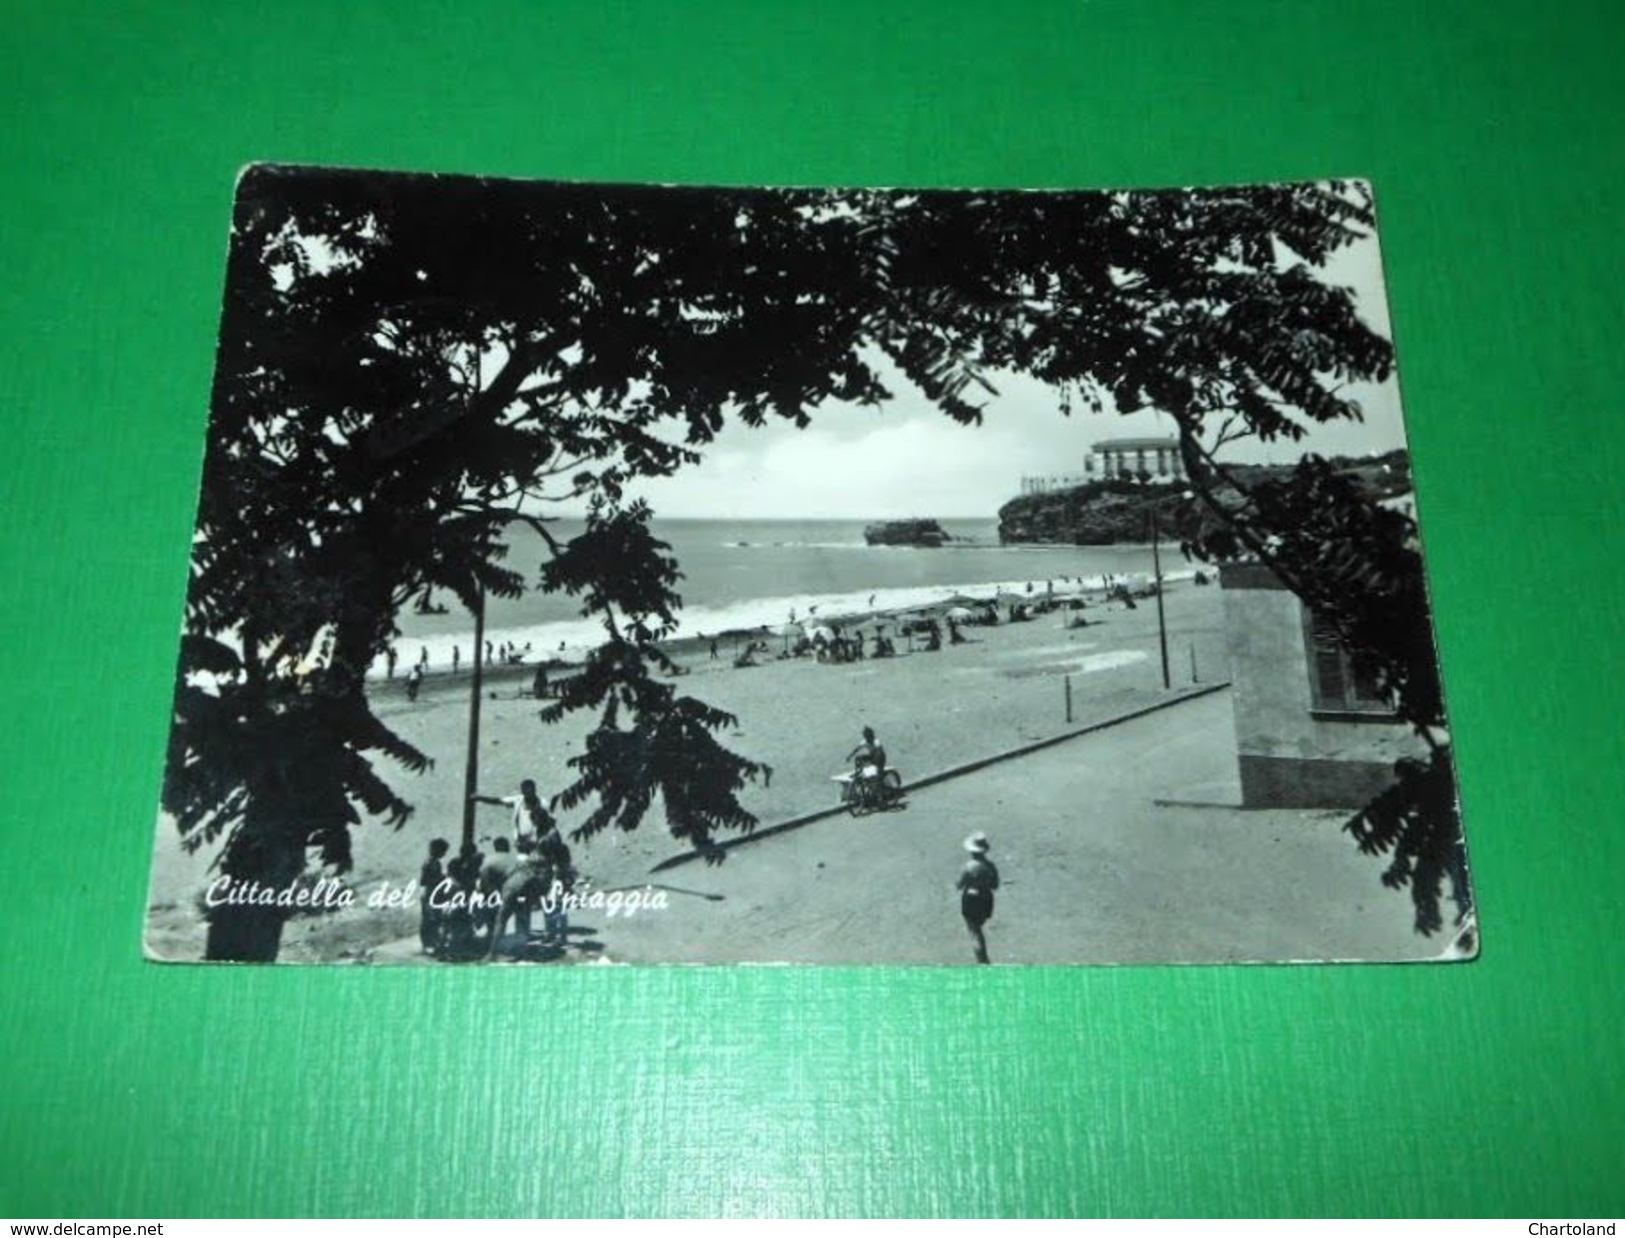 Cartolina Cittadella Del Capo - Spiaggia 1971 - Cosenza